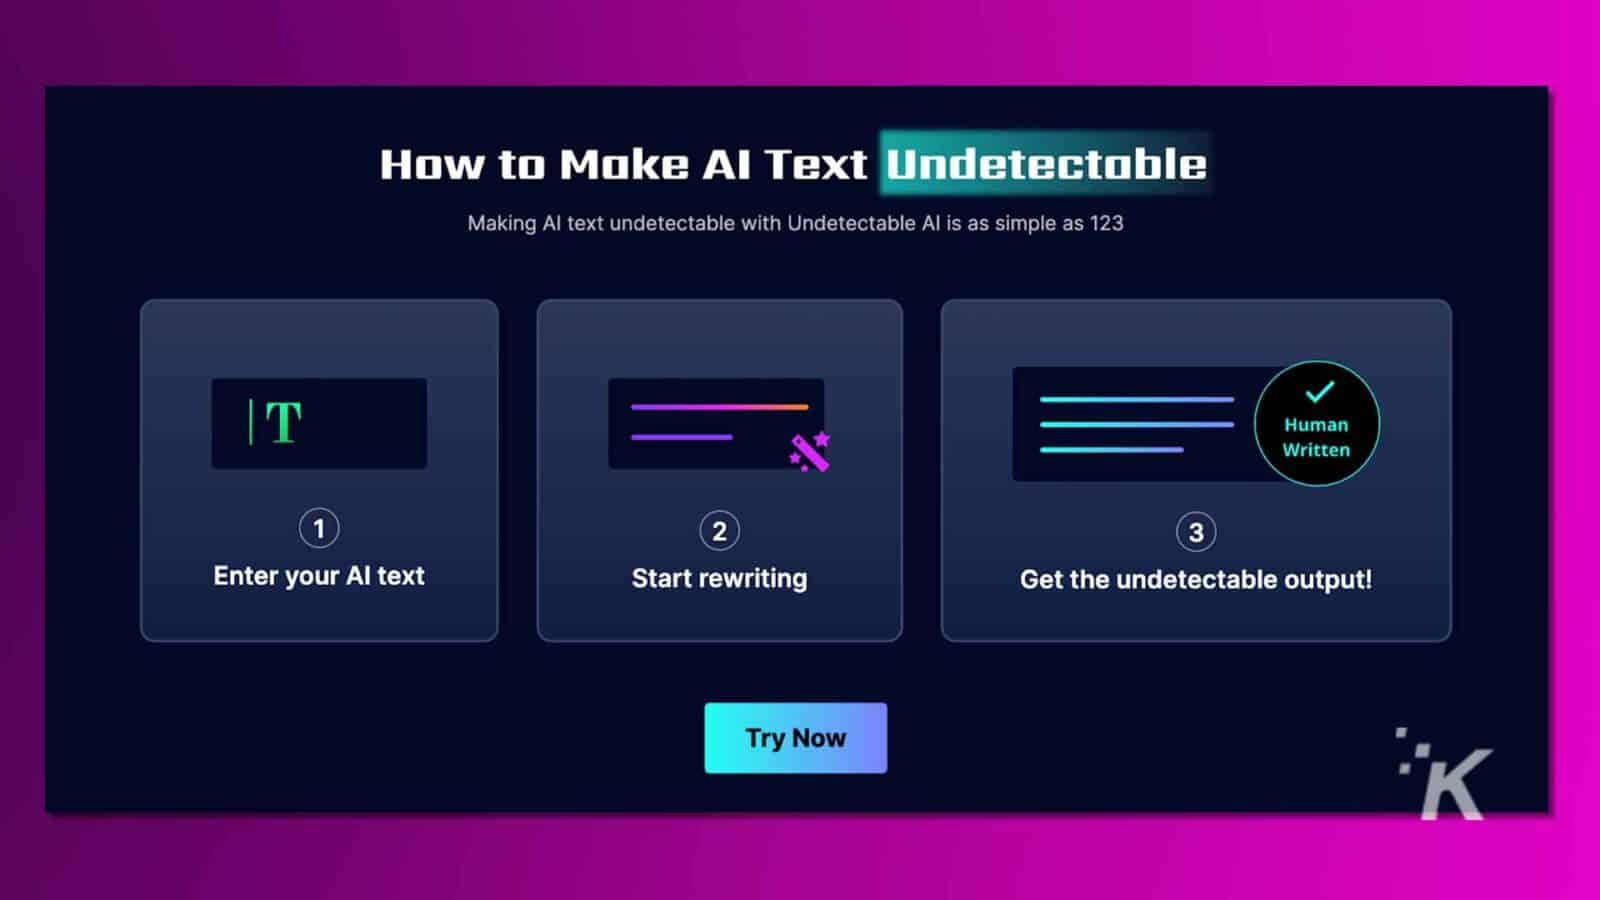 Инфографика под названием «Как сделать текст AI необнаружимым» с тремя шагами, яркими розовыми и фиолетовыми цветами и кнопкой «Попробовать сейчас», рекламирующая программный инструмент. Необнаружимый ИИ